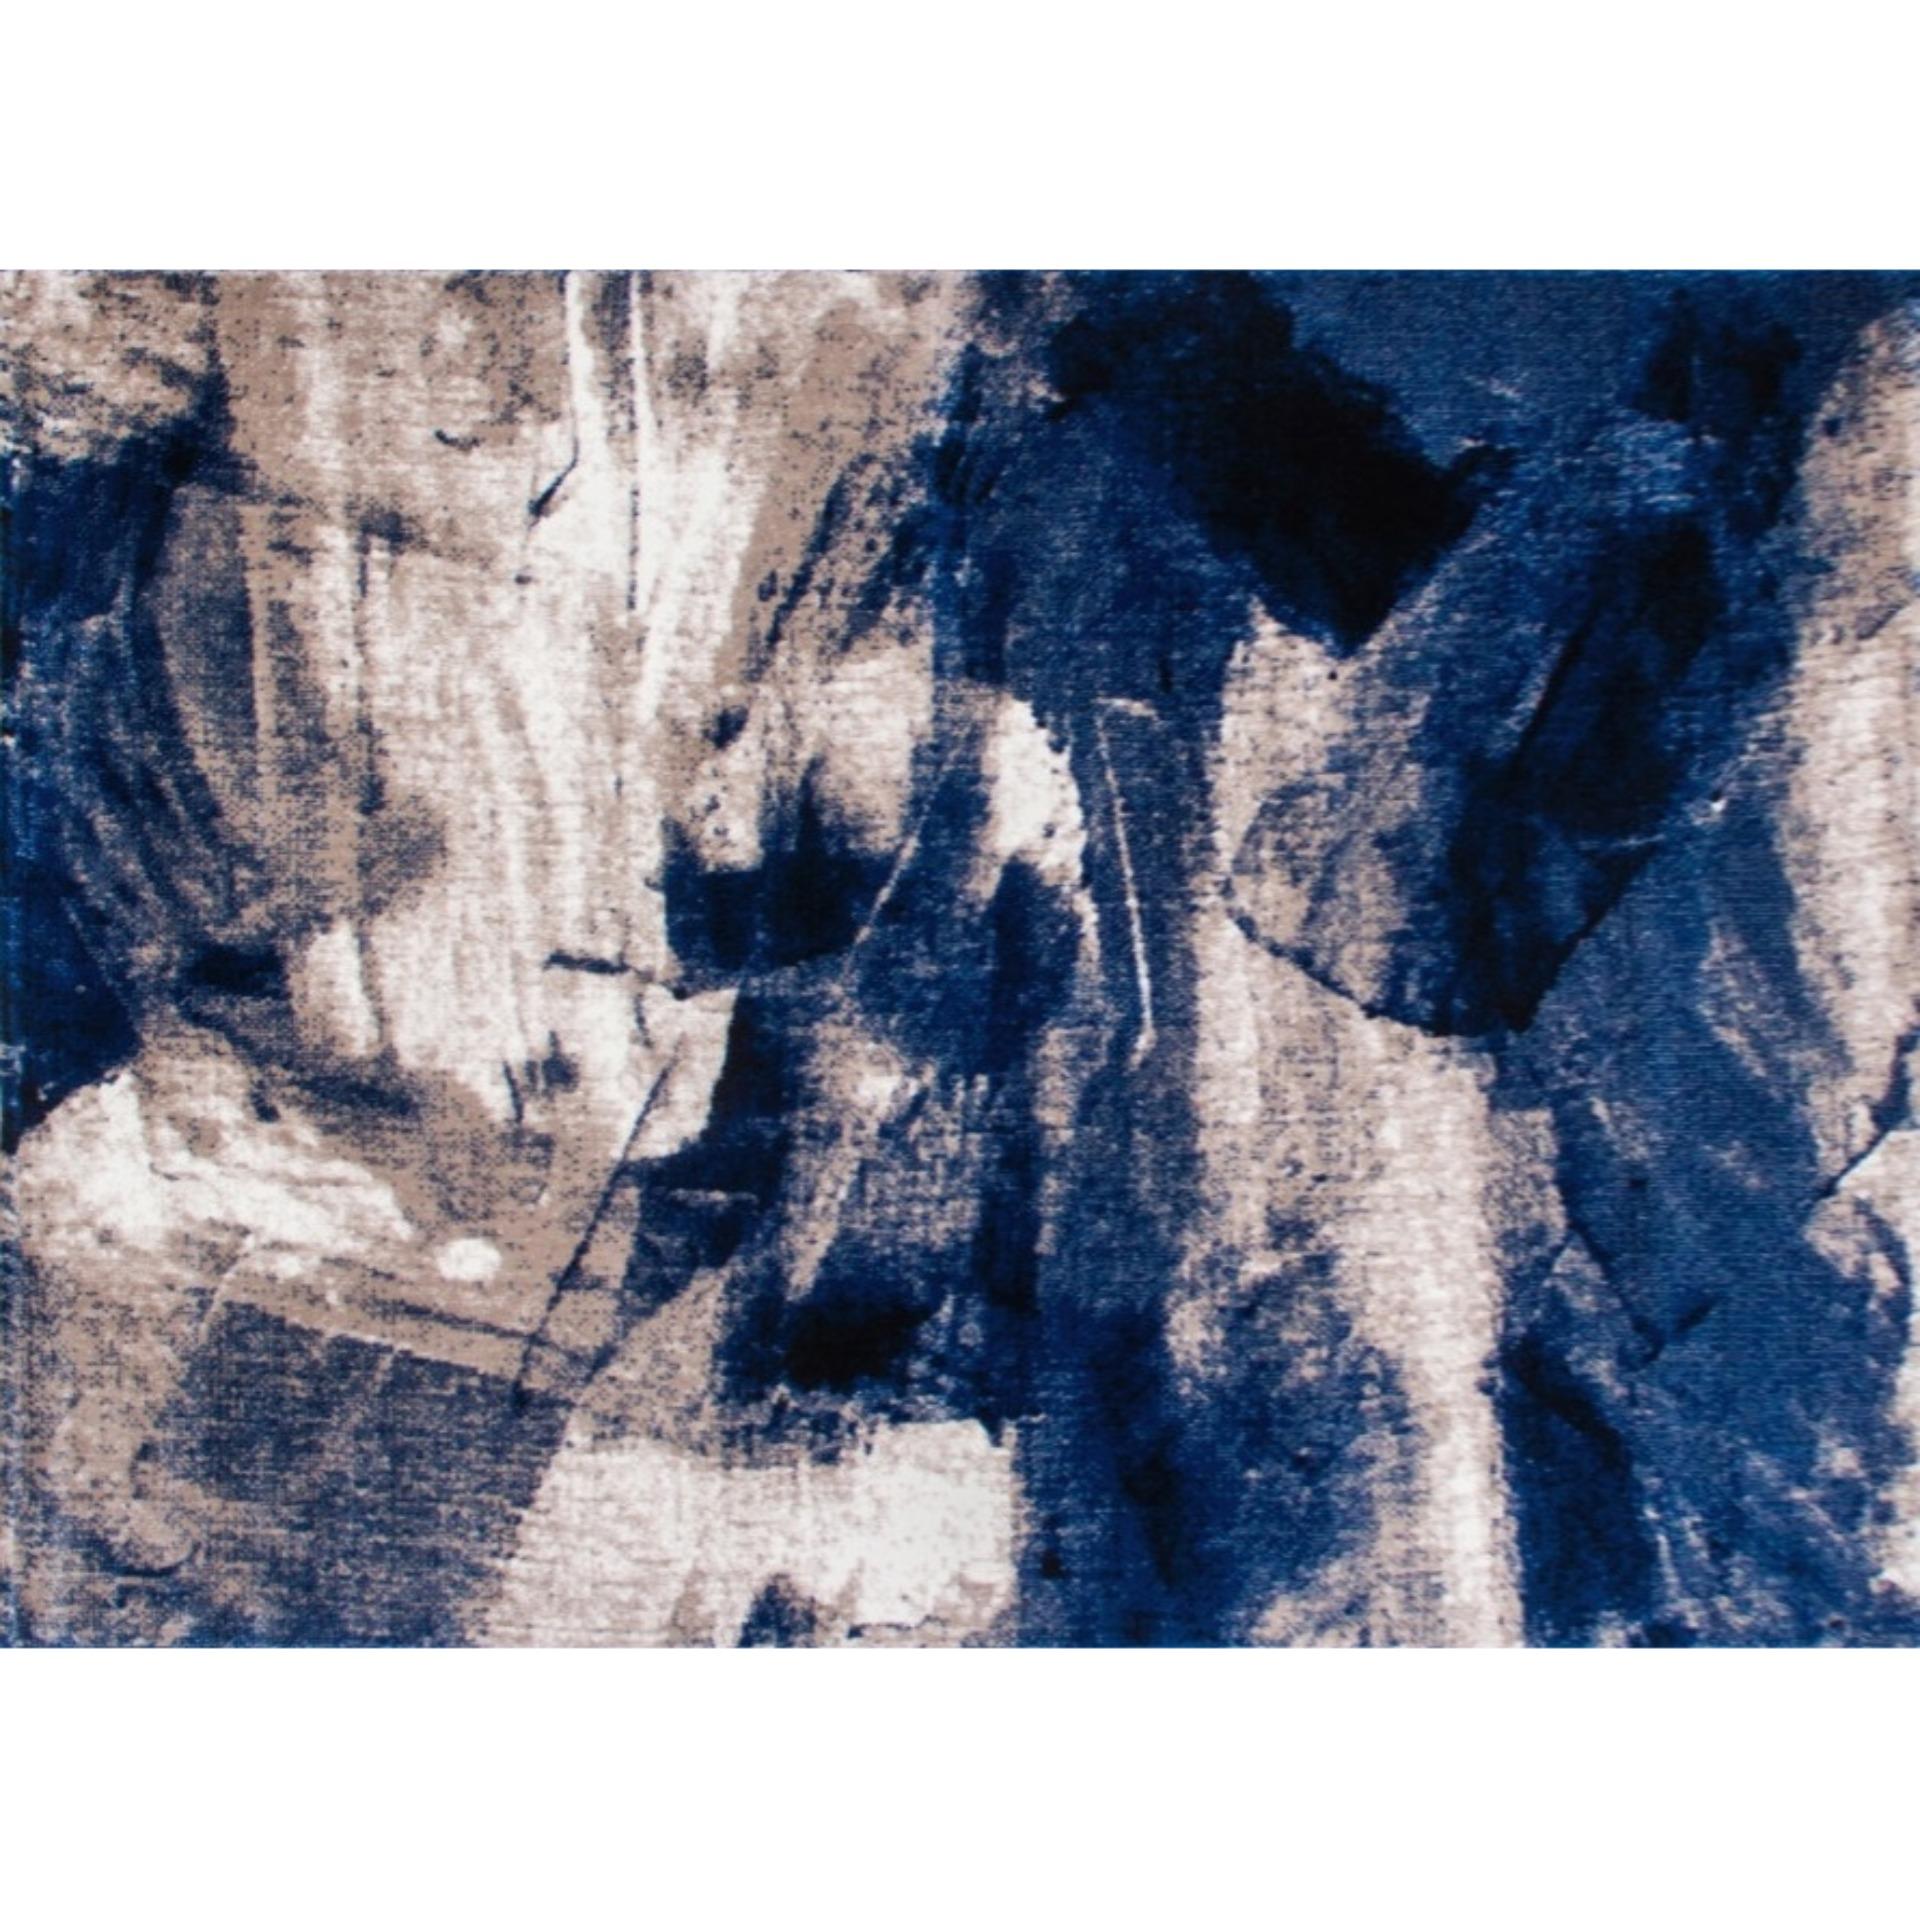 THẢM TRANG TRÍ PHÒNG KHÁCH, THẢM SOFA HIỆU LINH HÀ MẪU BLUE ART COLLECTION BA006 KÍCH THƯỚC 160 x 230 CM